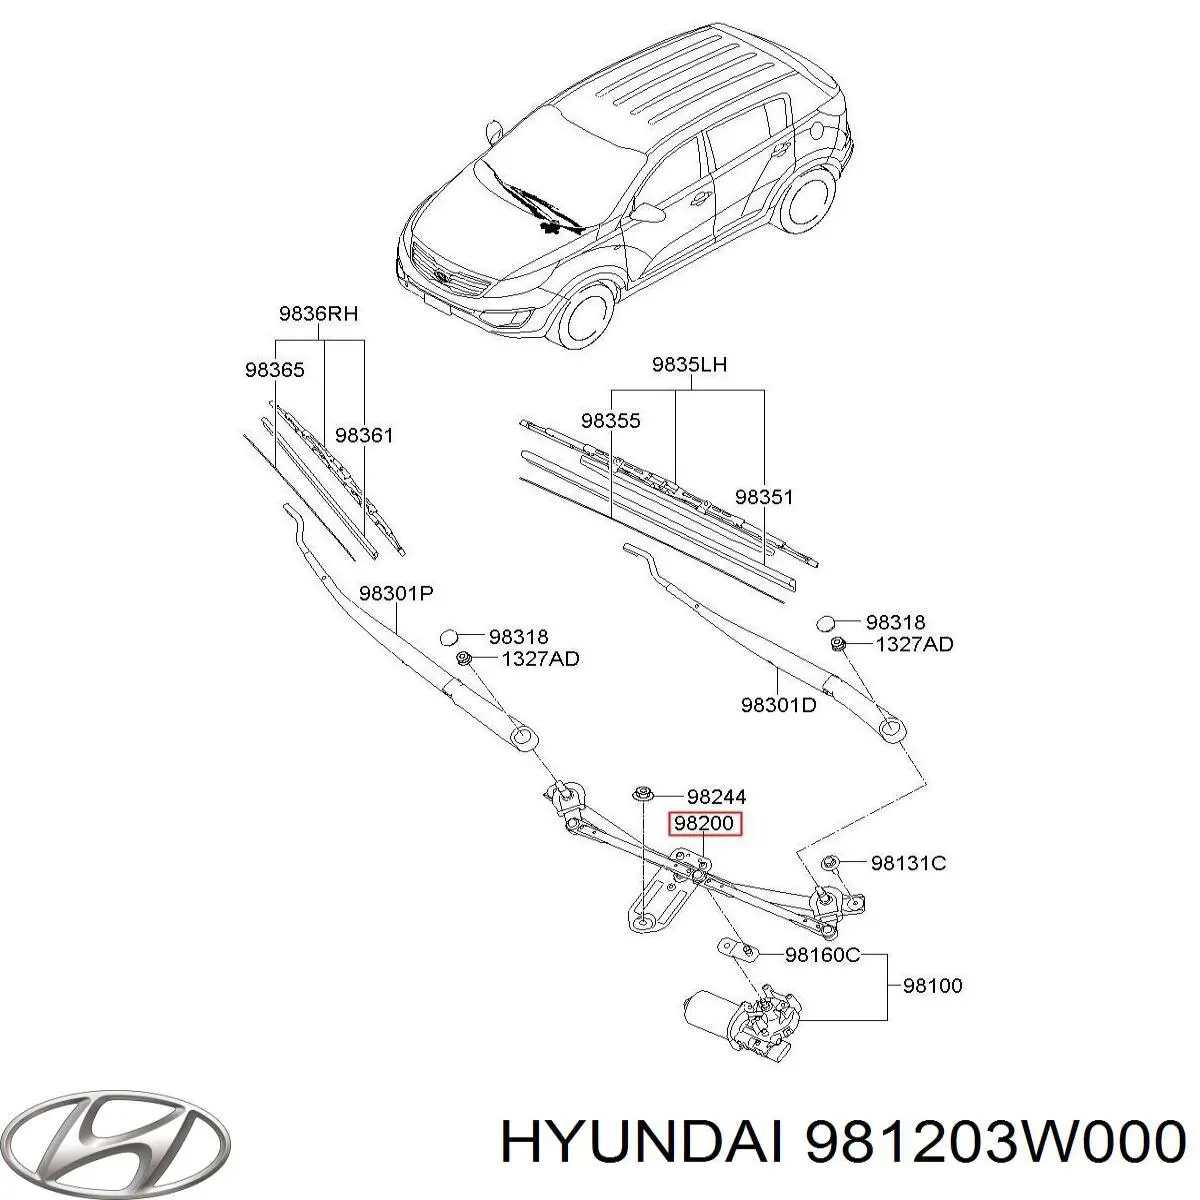 981203W000 Hyundai/Kia varillaje lavaparabrisas